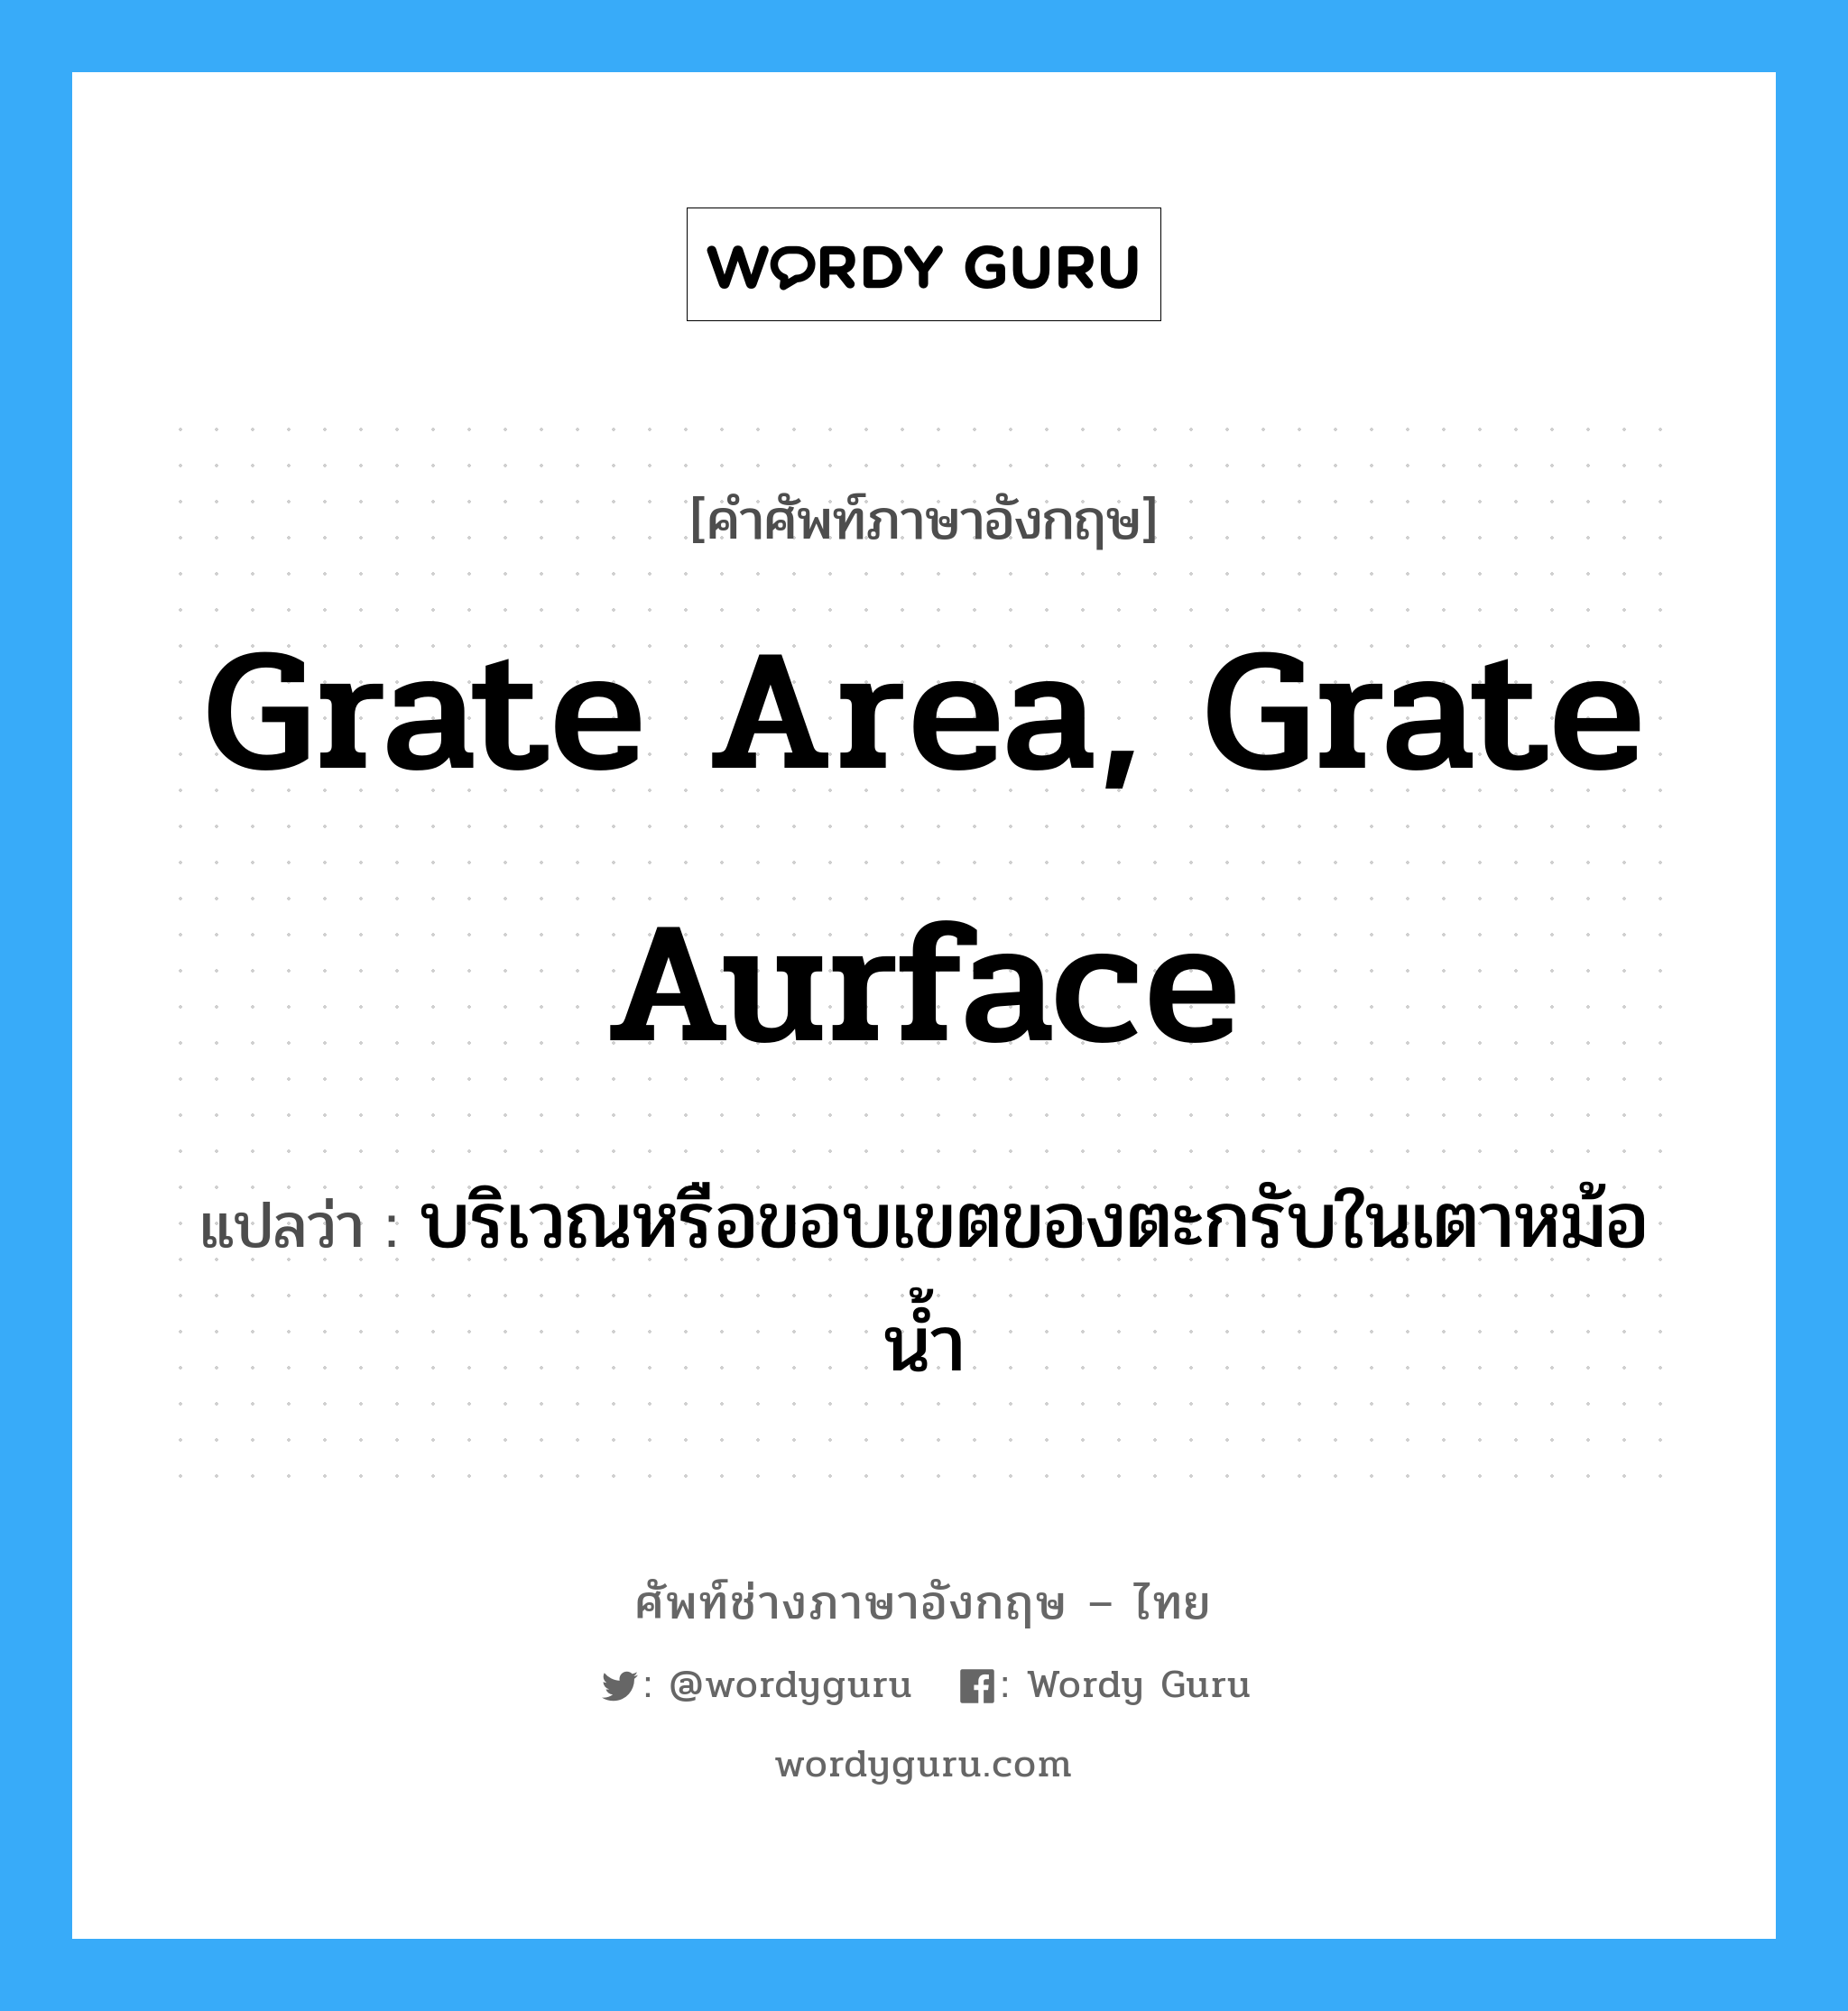 grate area, grate aurface แปลว่า?, คำศัพท์ช่างภาษาอังกฤษ - ไทย grate area, grate aurface คำศัพท์ภาษาอังกฤษ grate area, grate aurface แปลว่า บริเวณหรือขอบเขตของตะกรับในเตาหม้อน้ำ